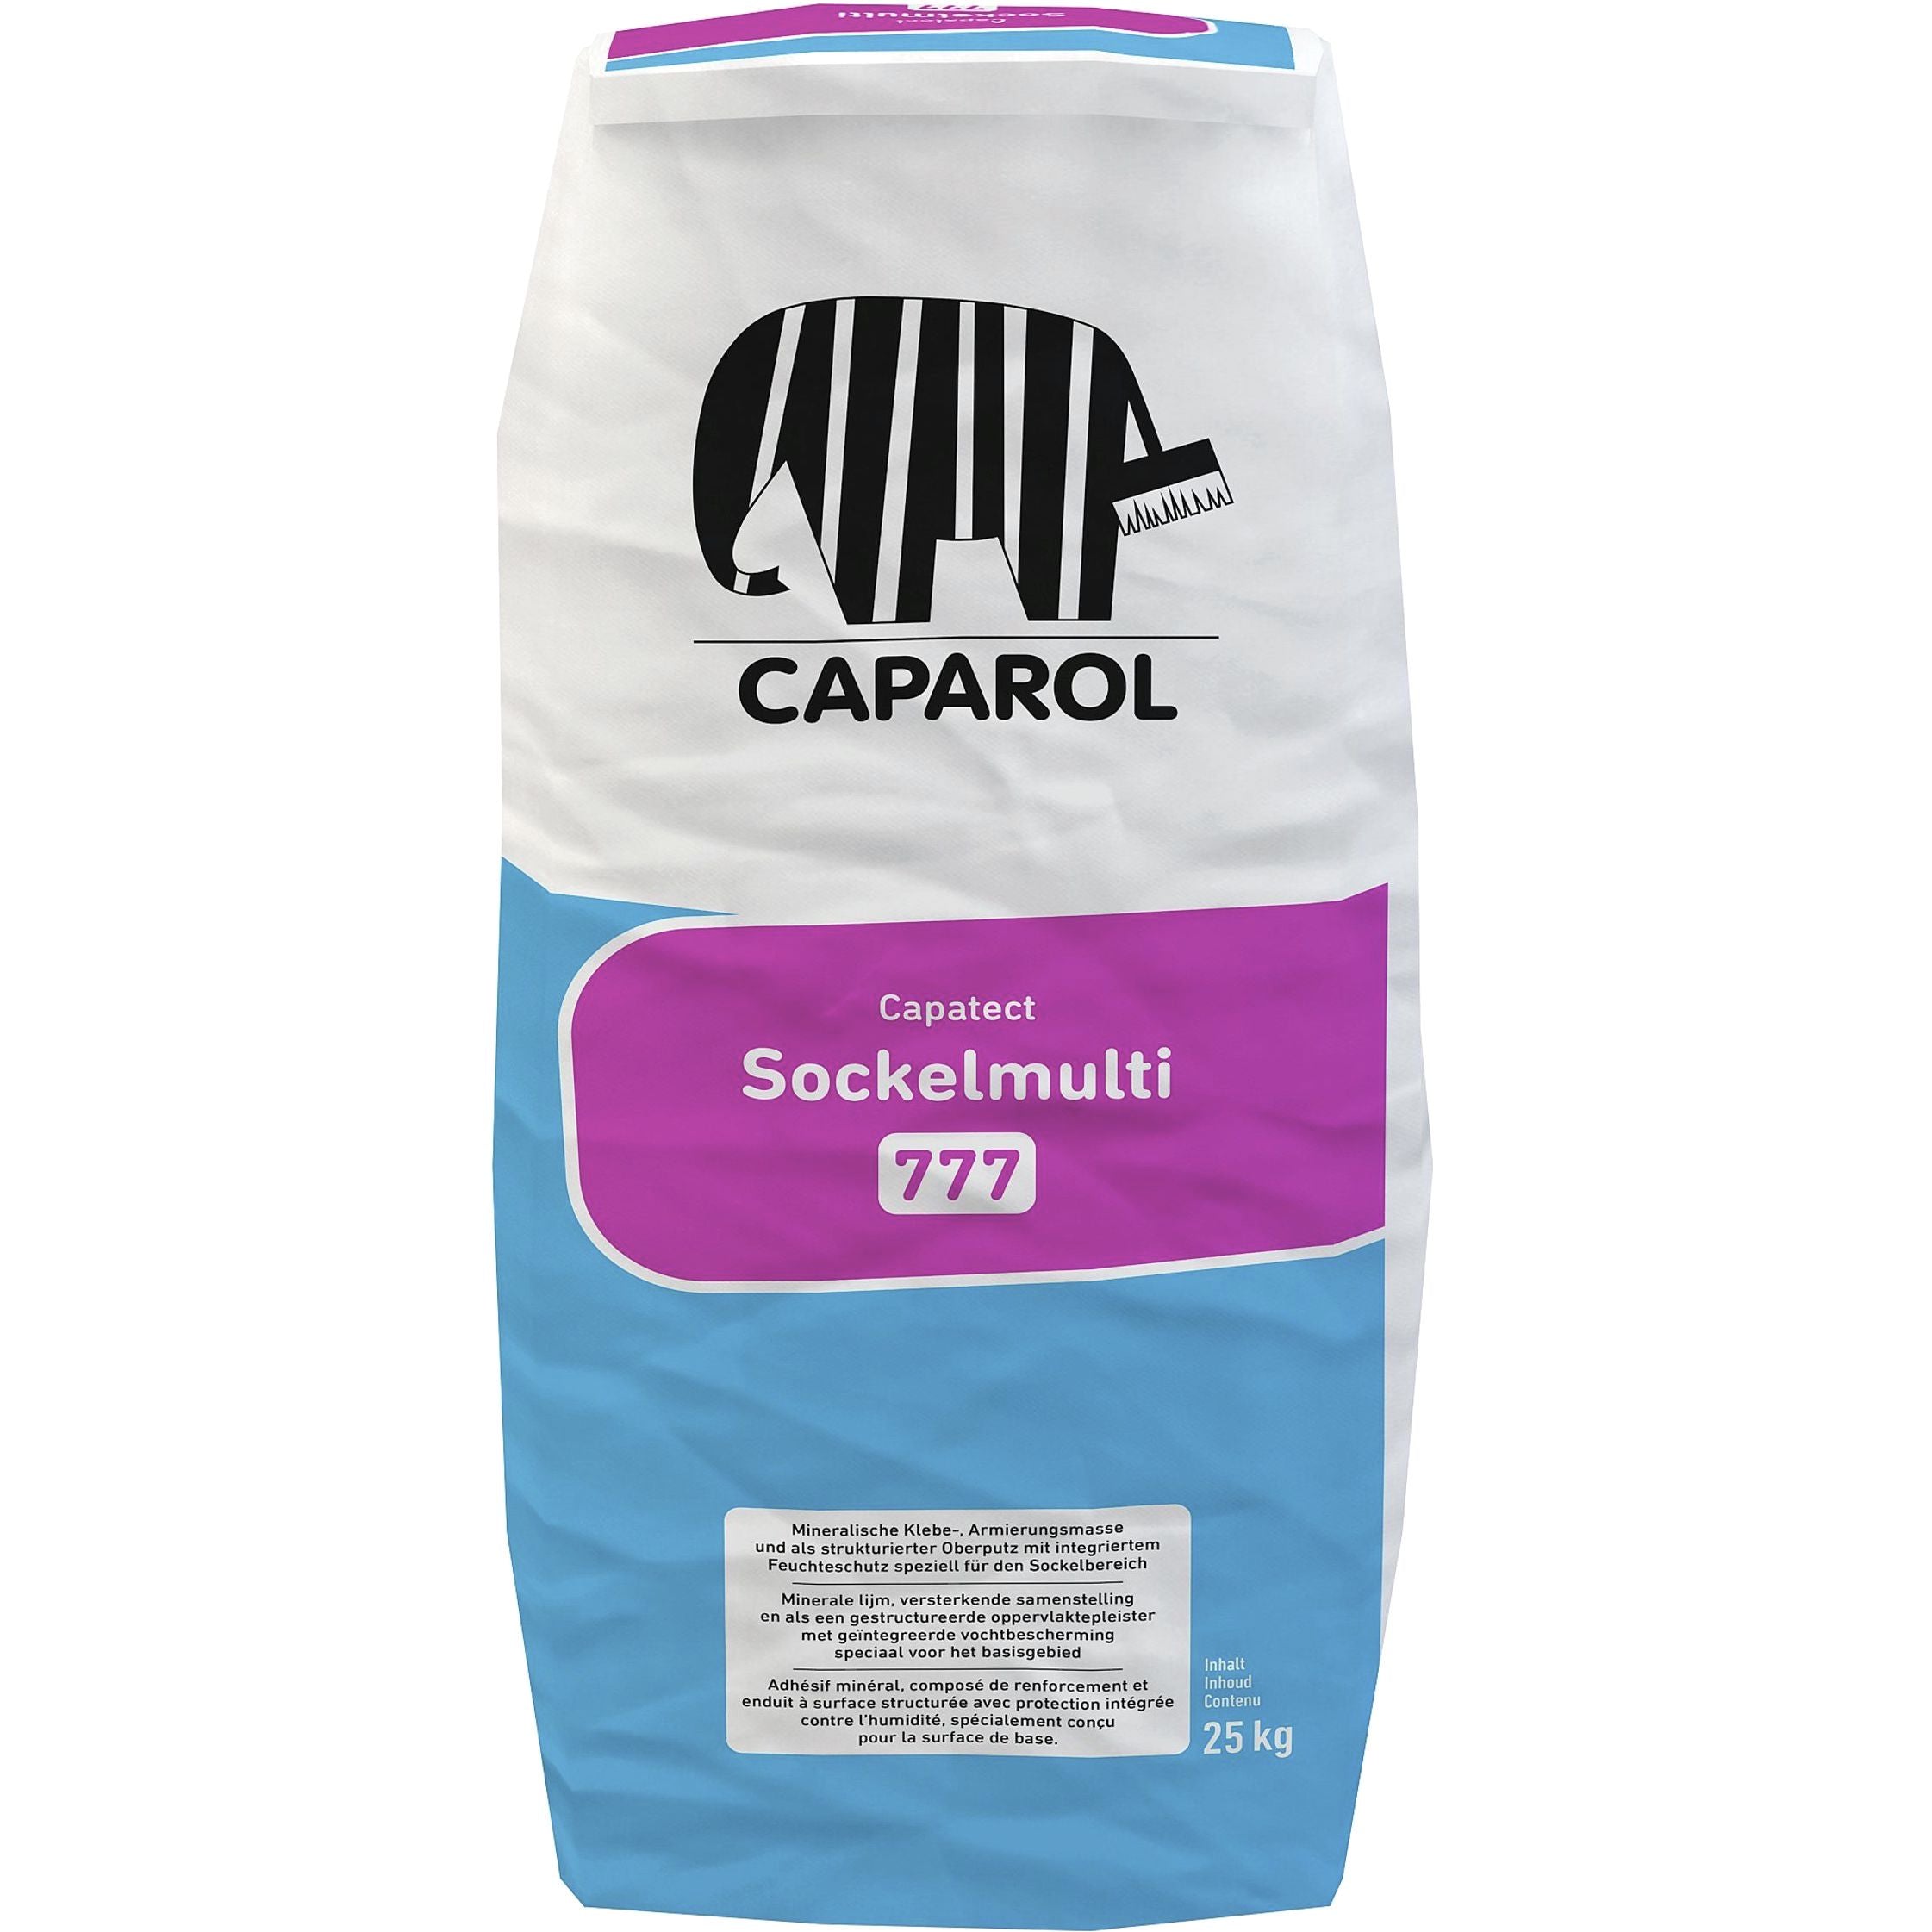 Caparol Capatect Sockelmulti 777, 25kg